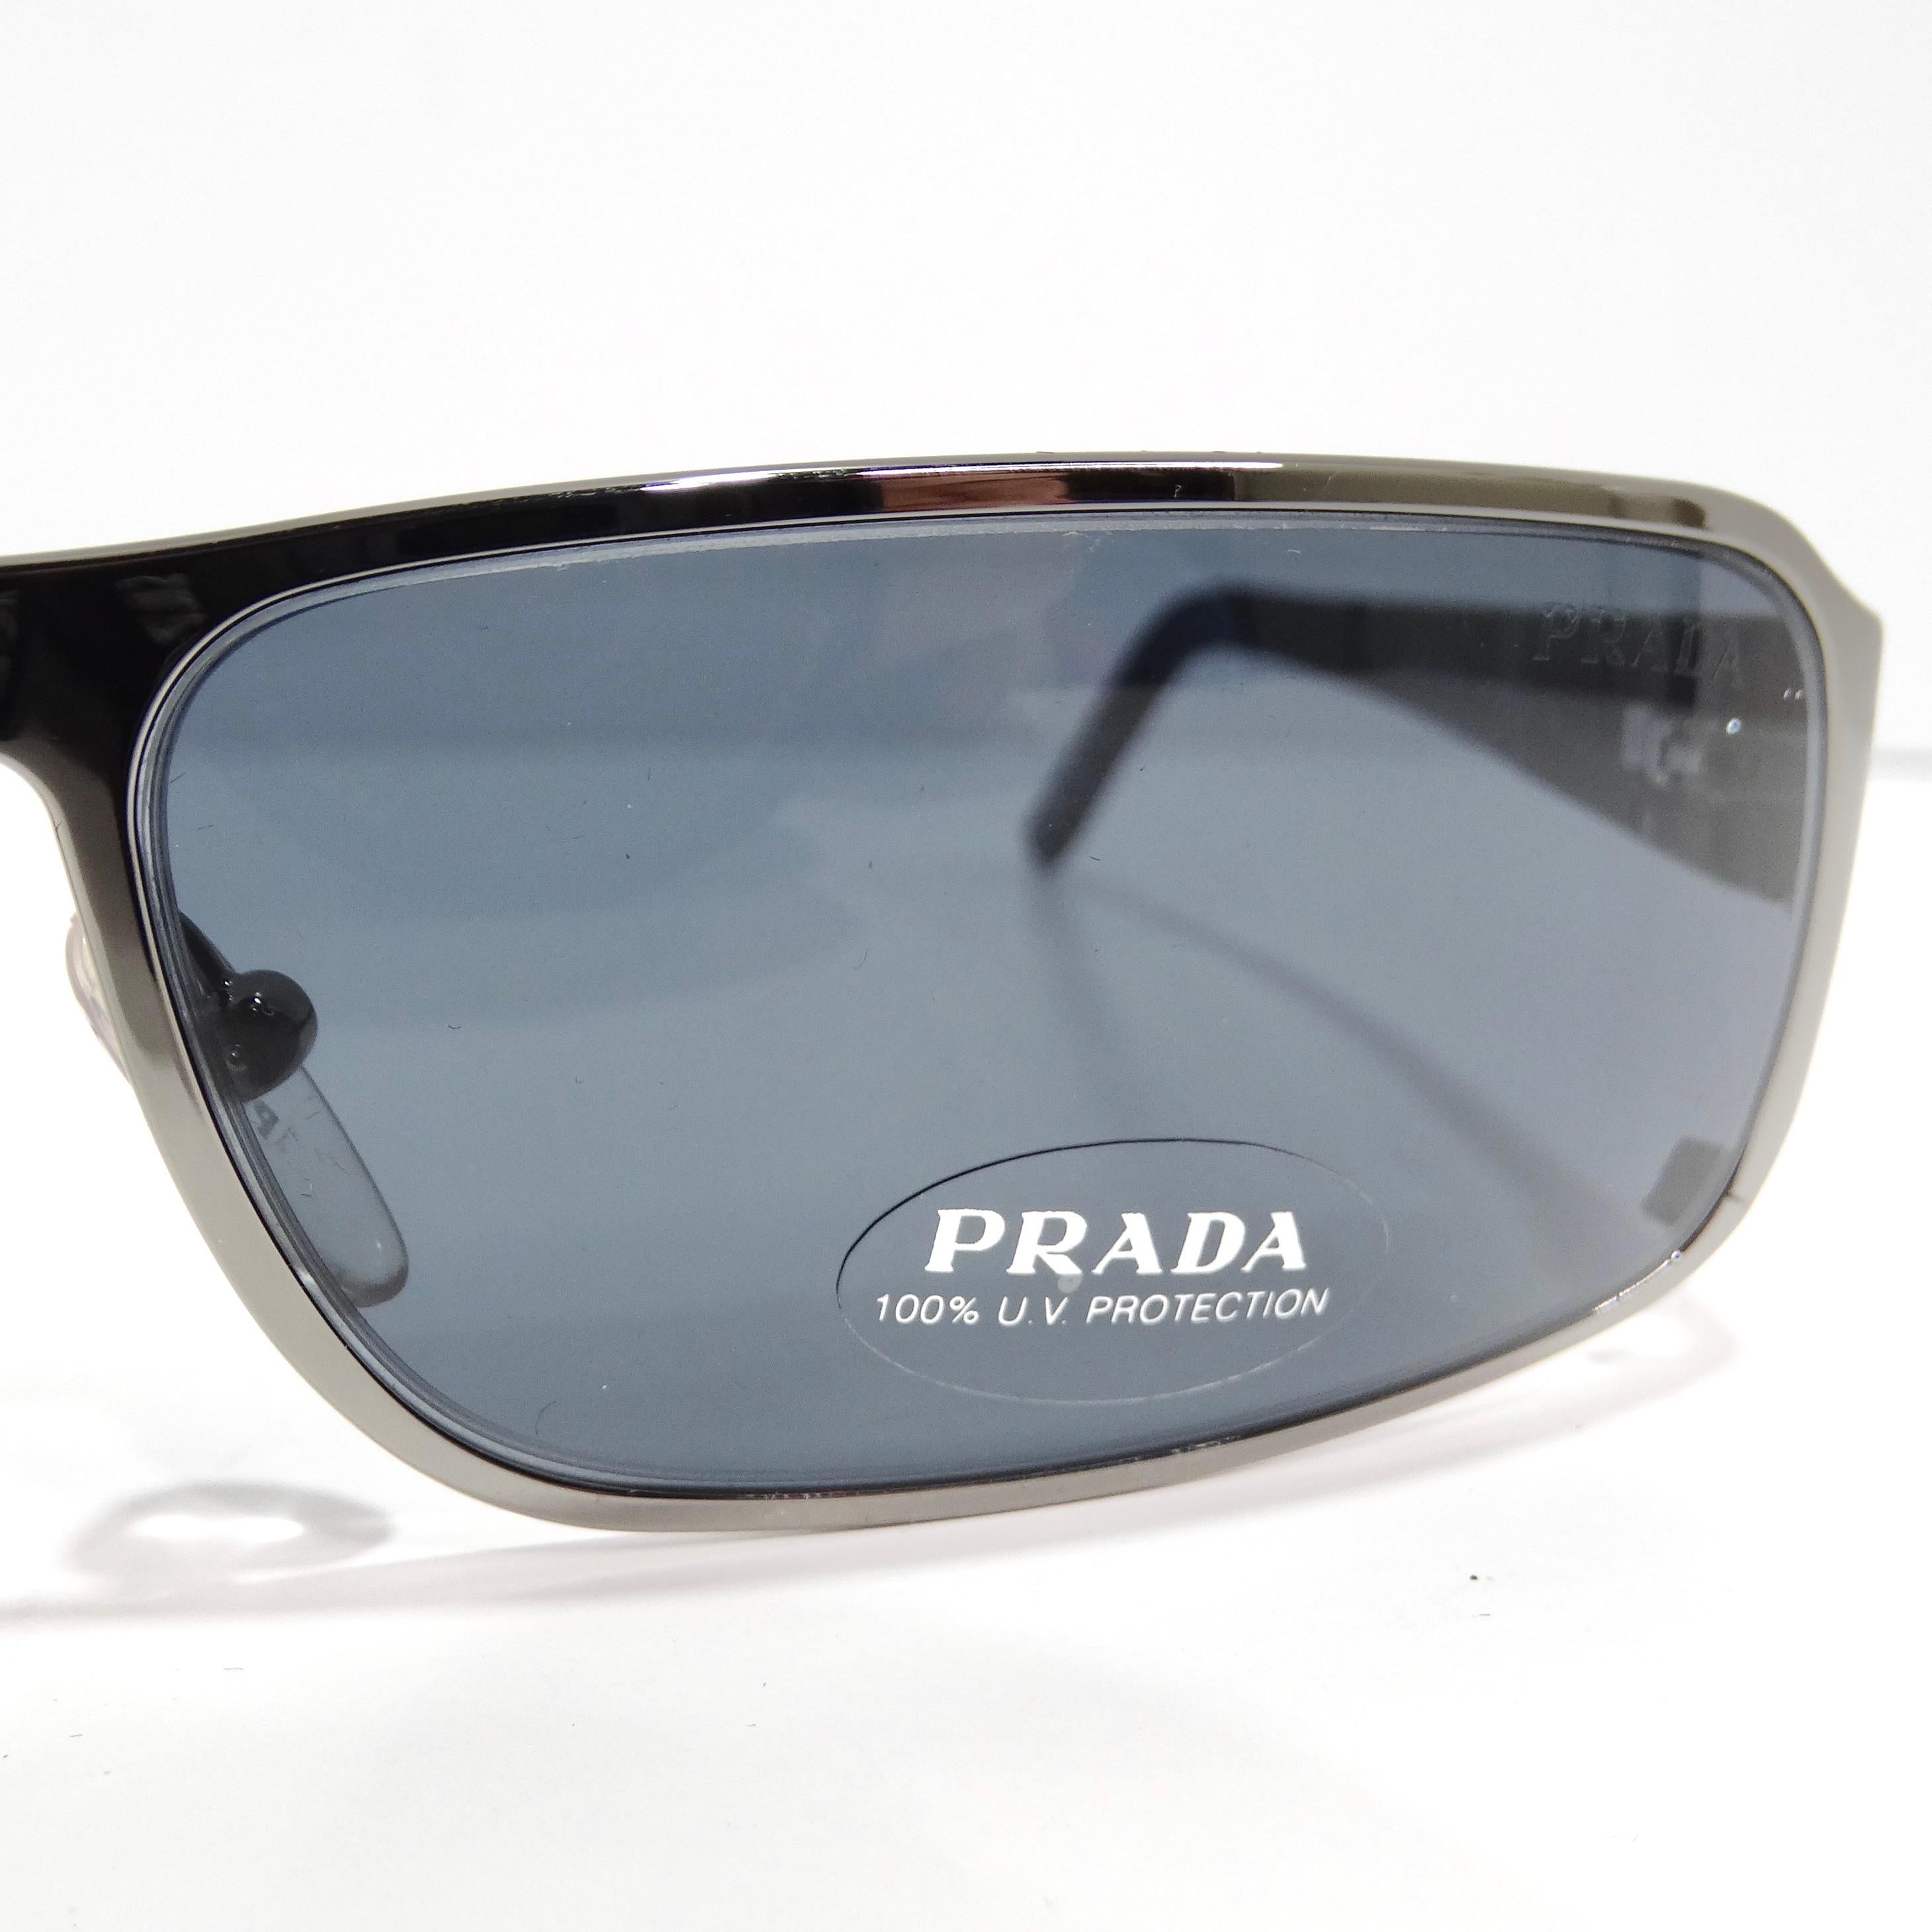 Entrez dans l'allure des années 1990 avec les lunettes de soleil Prada 1990 à monture rectangulaire argentée, un accessoire classique et intemporel qui respire la sophistication. Ces lunettes de soleil présentent une monture rectangulaire aux fins